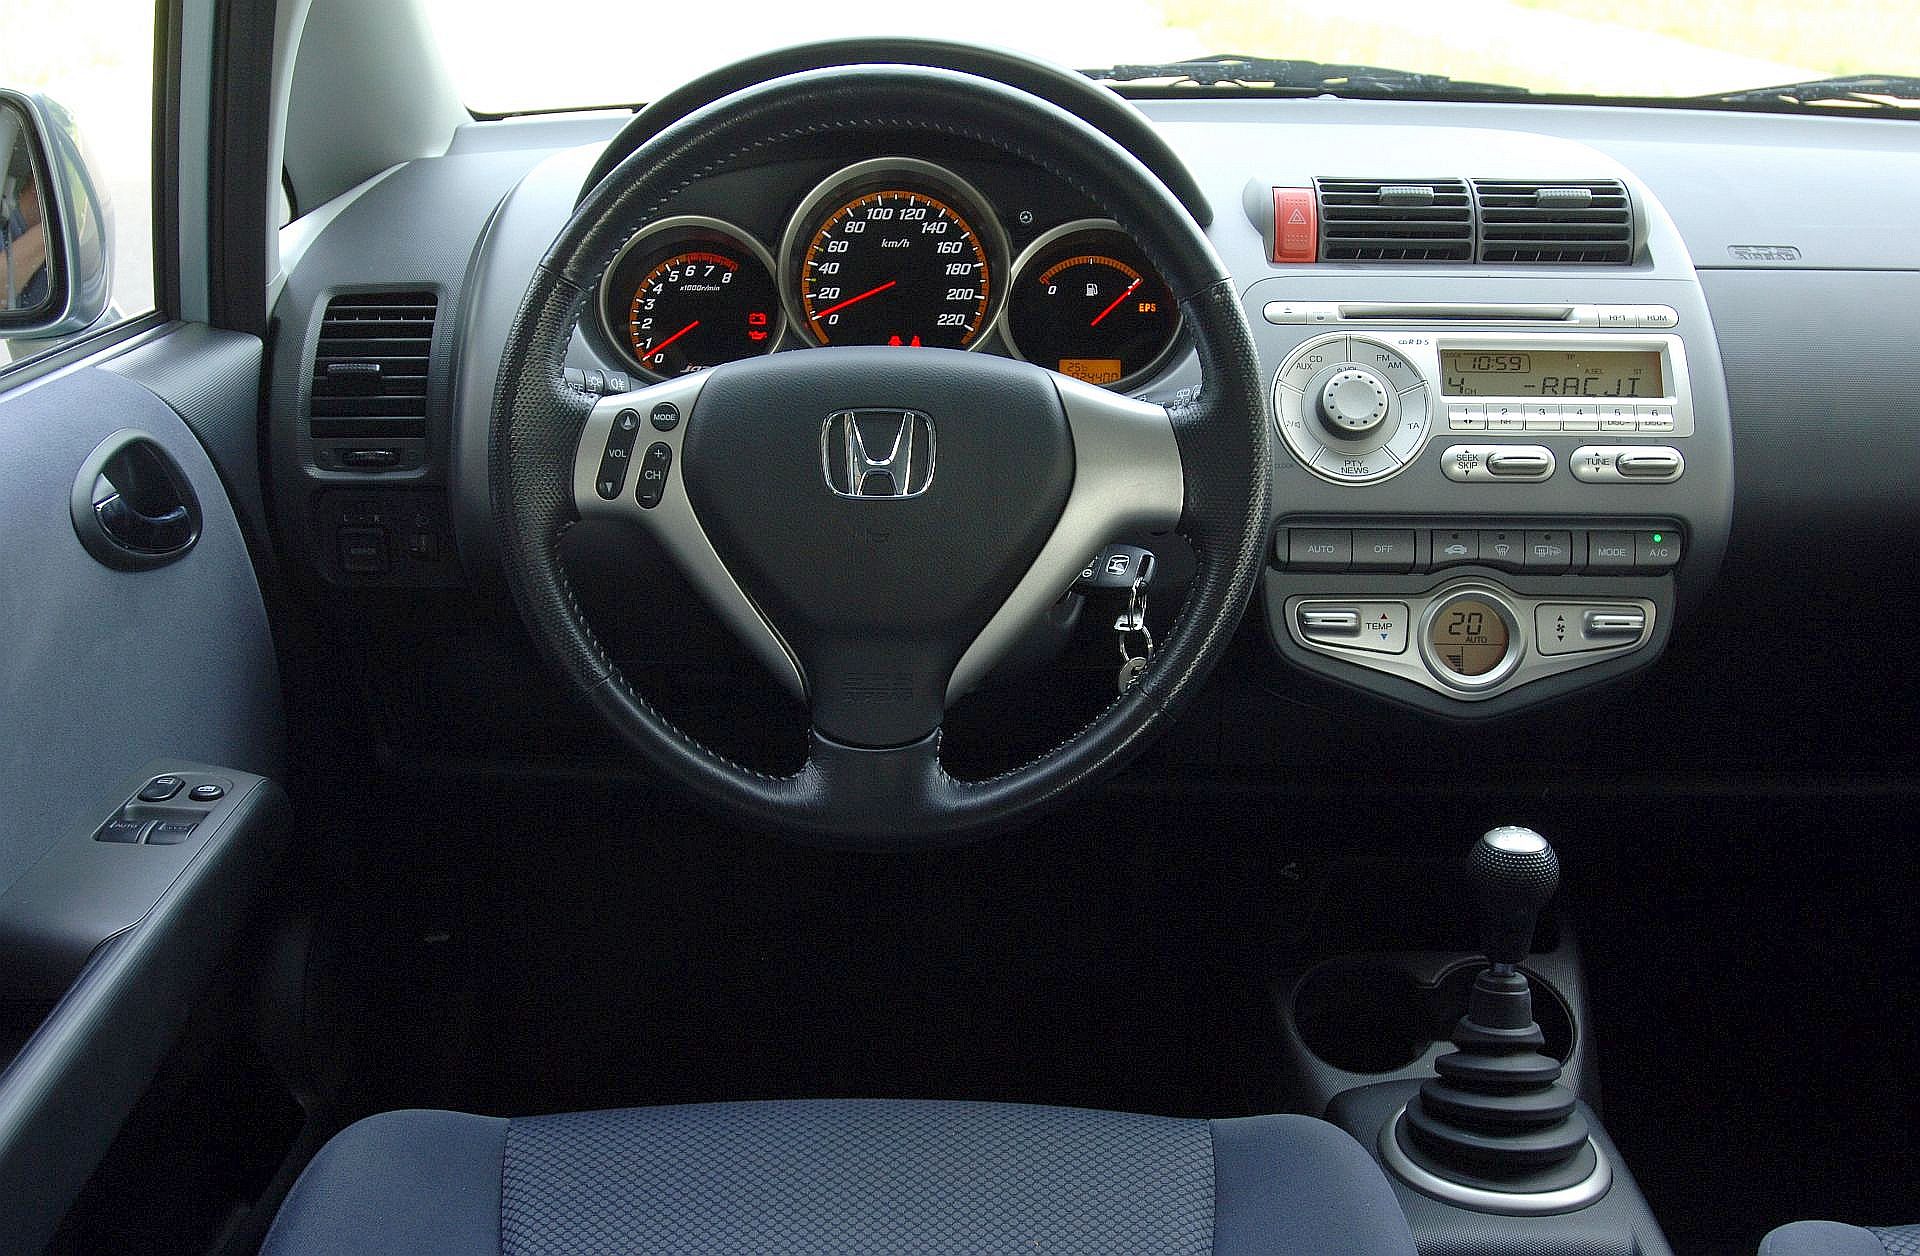 Używana Honda Jazz II i Honda Jazz III którą generację